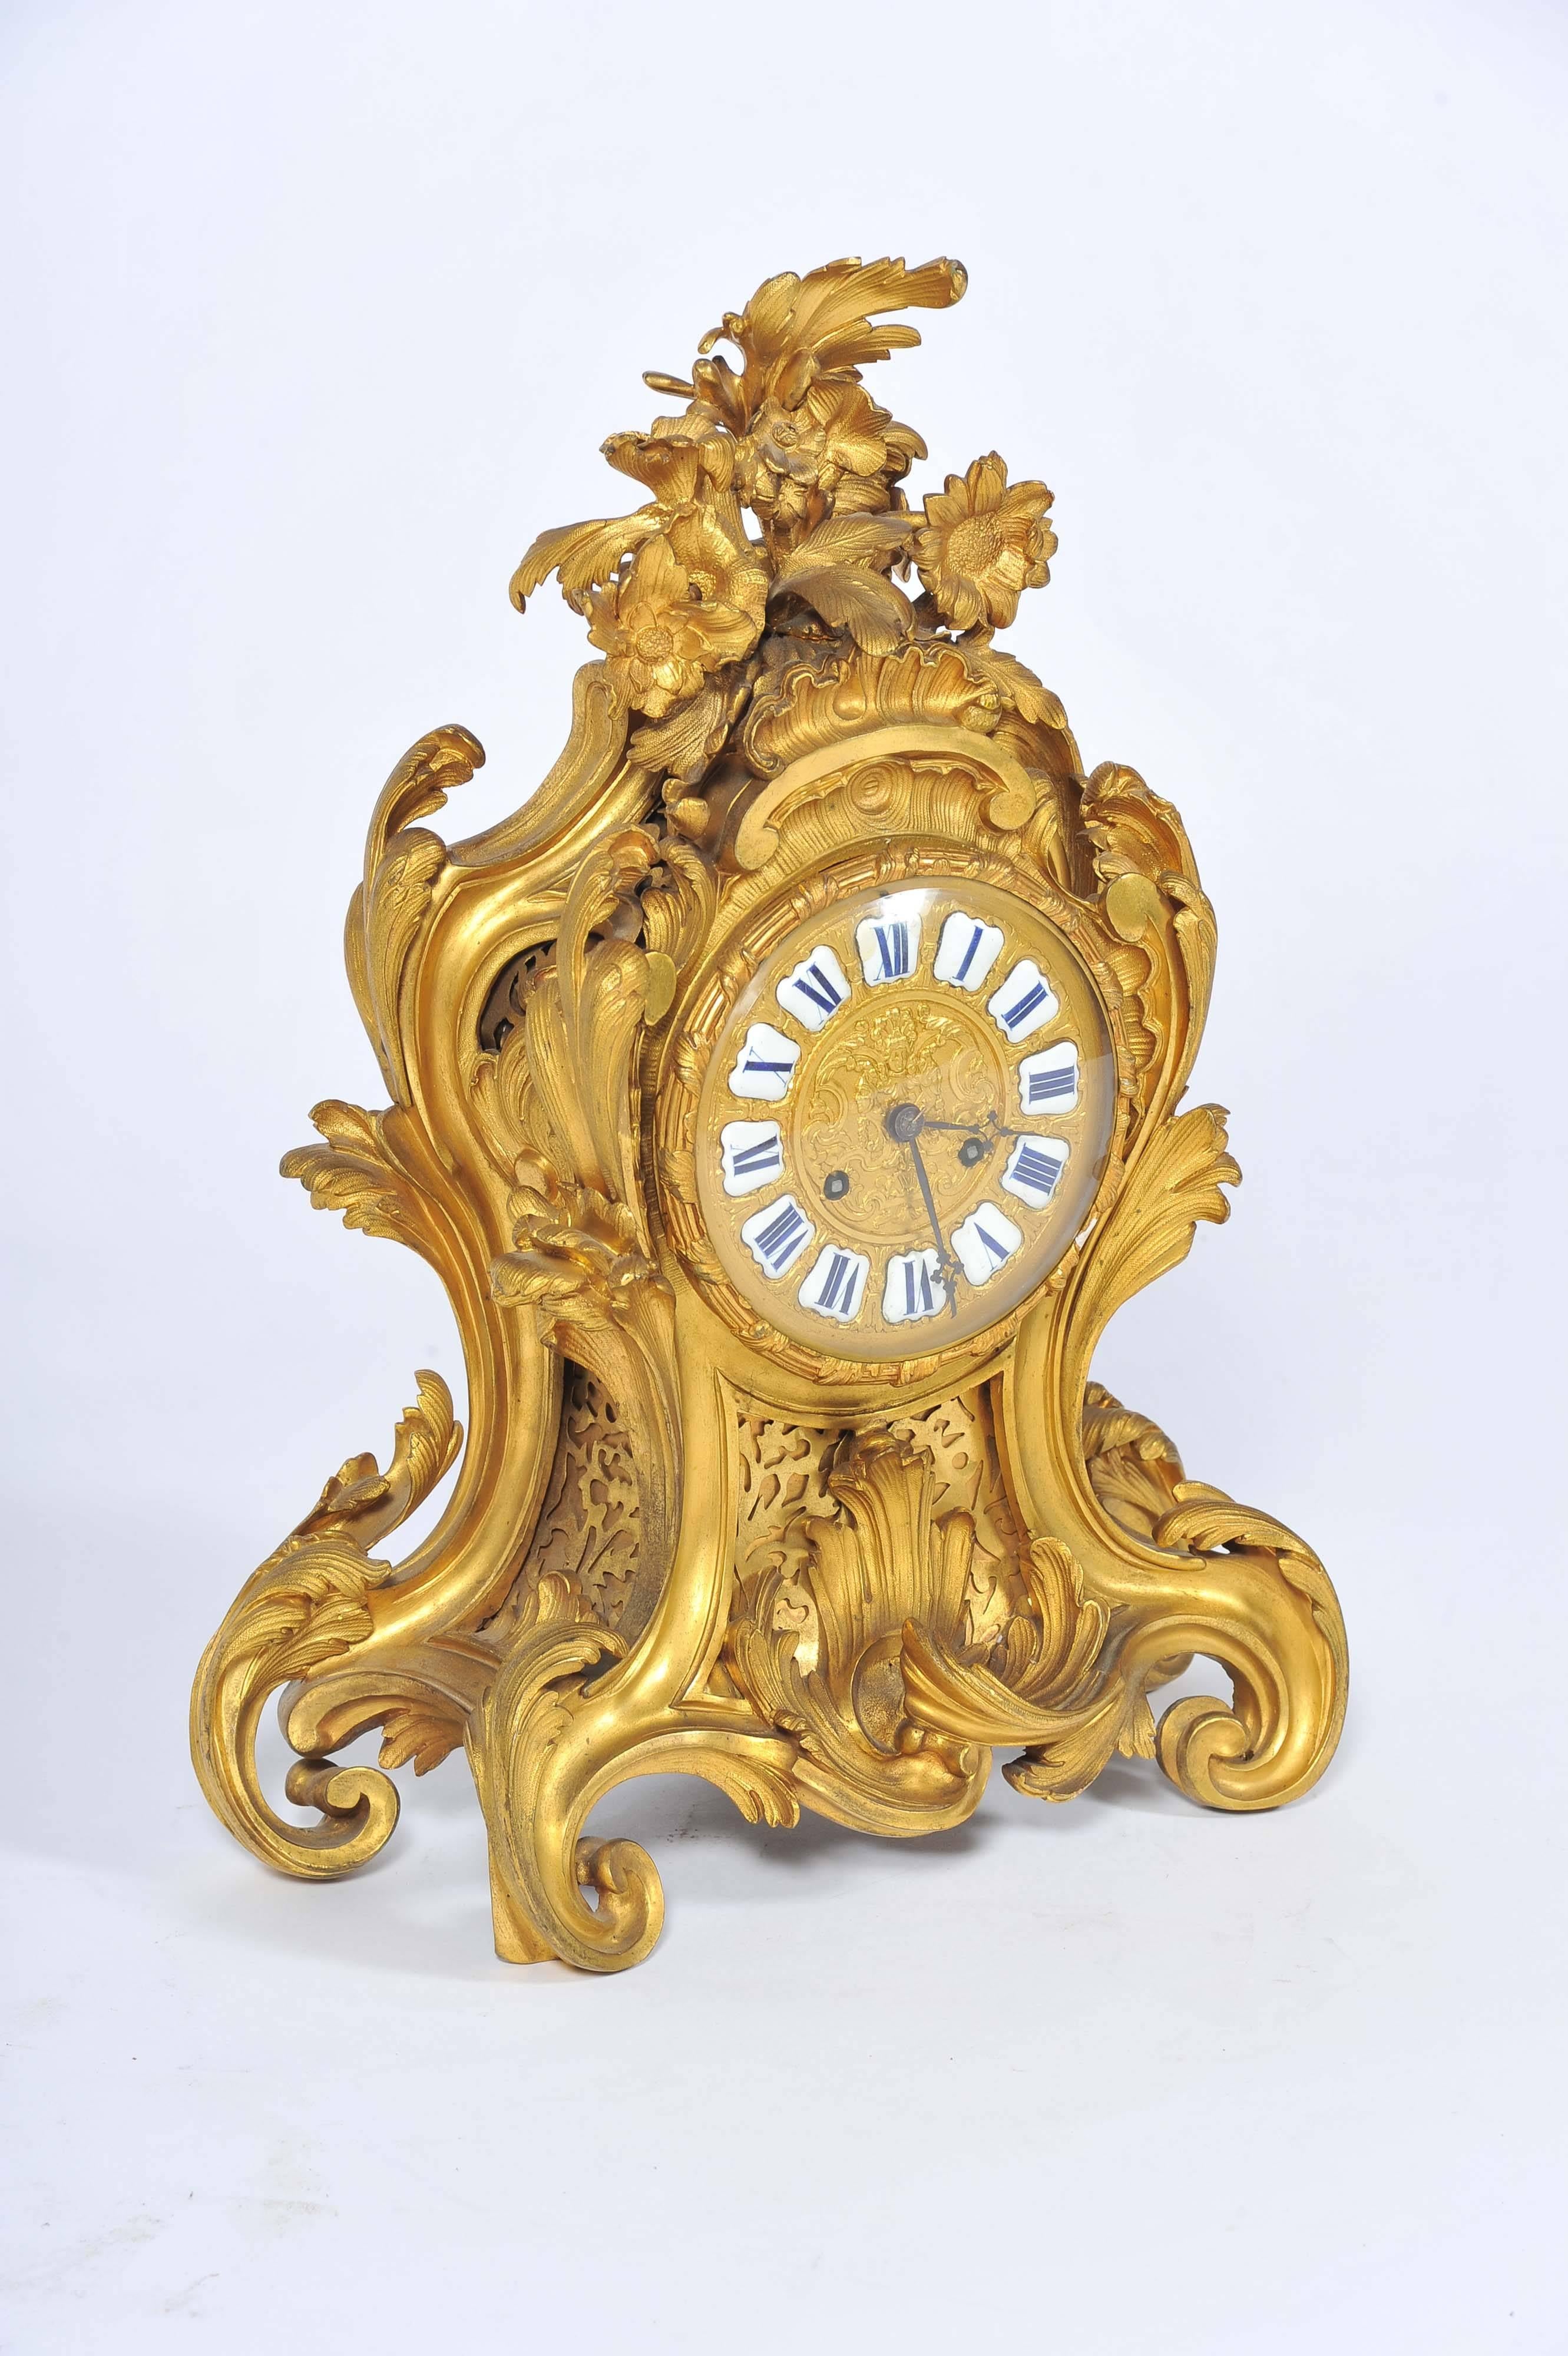 Eine gute Qualität Französisch 19. Jahrhundert Rokoko vergoldet Ormolu Kaminsims Uhr. Das achttägige Uhrwerk läutet zur vollen und halben Stunde.